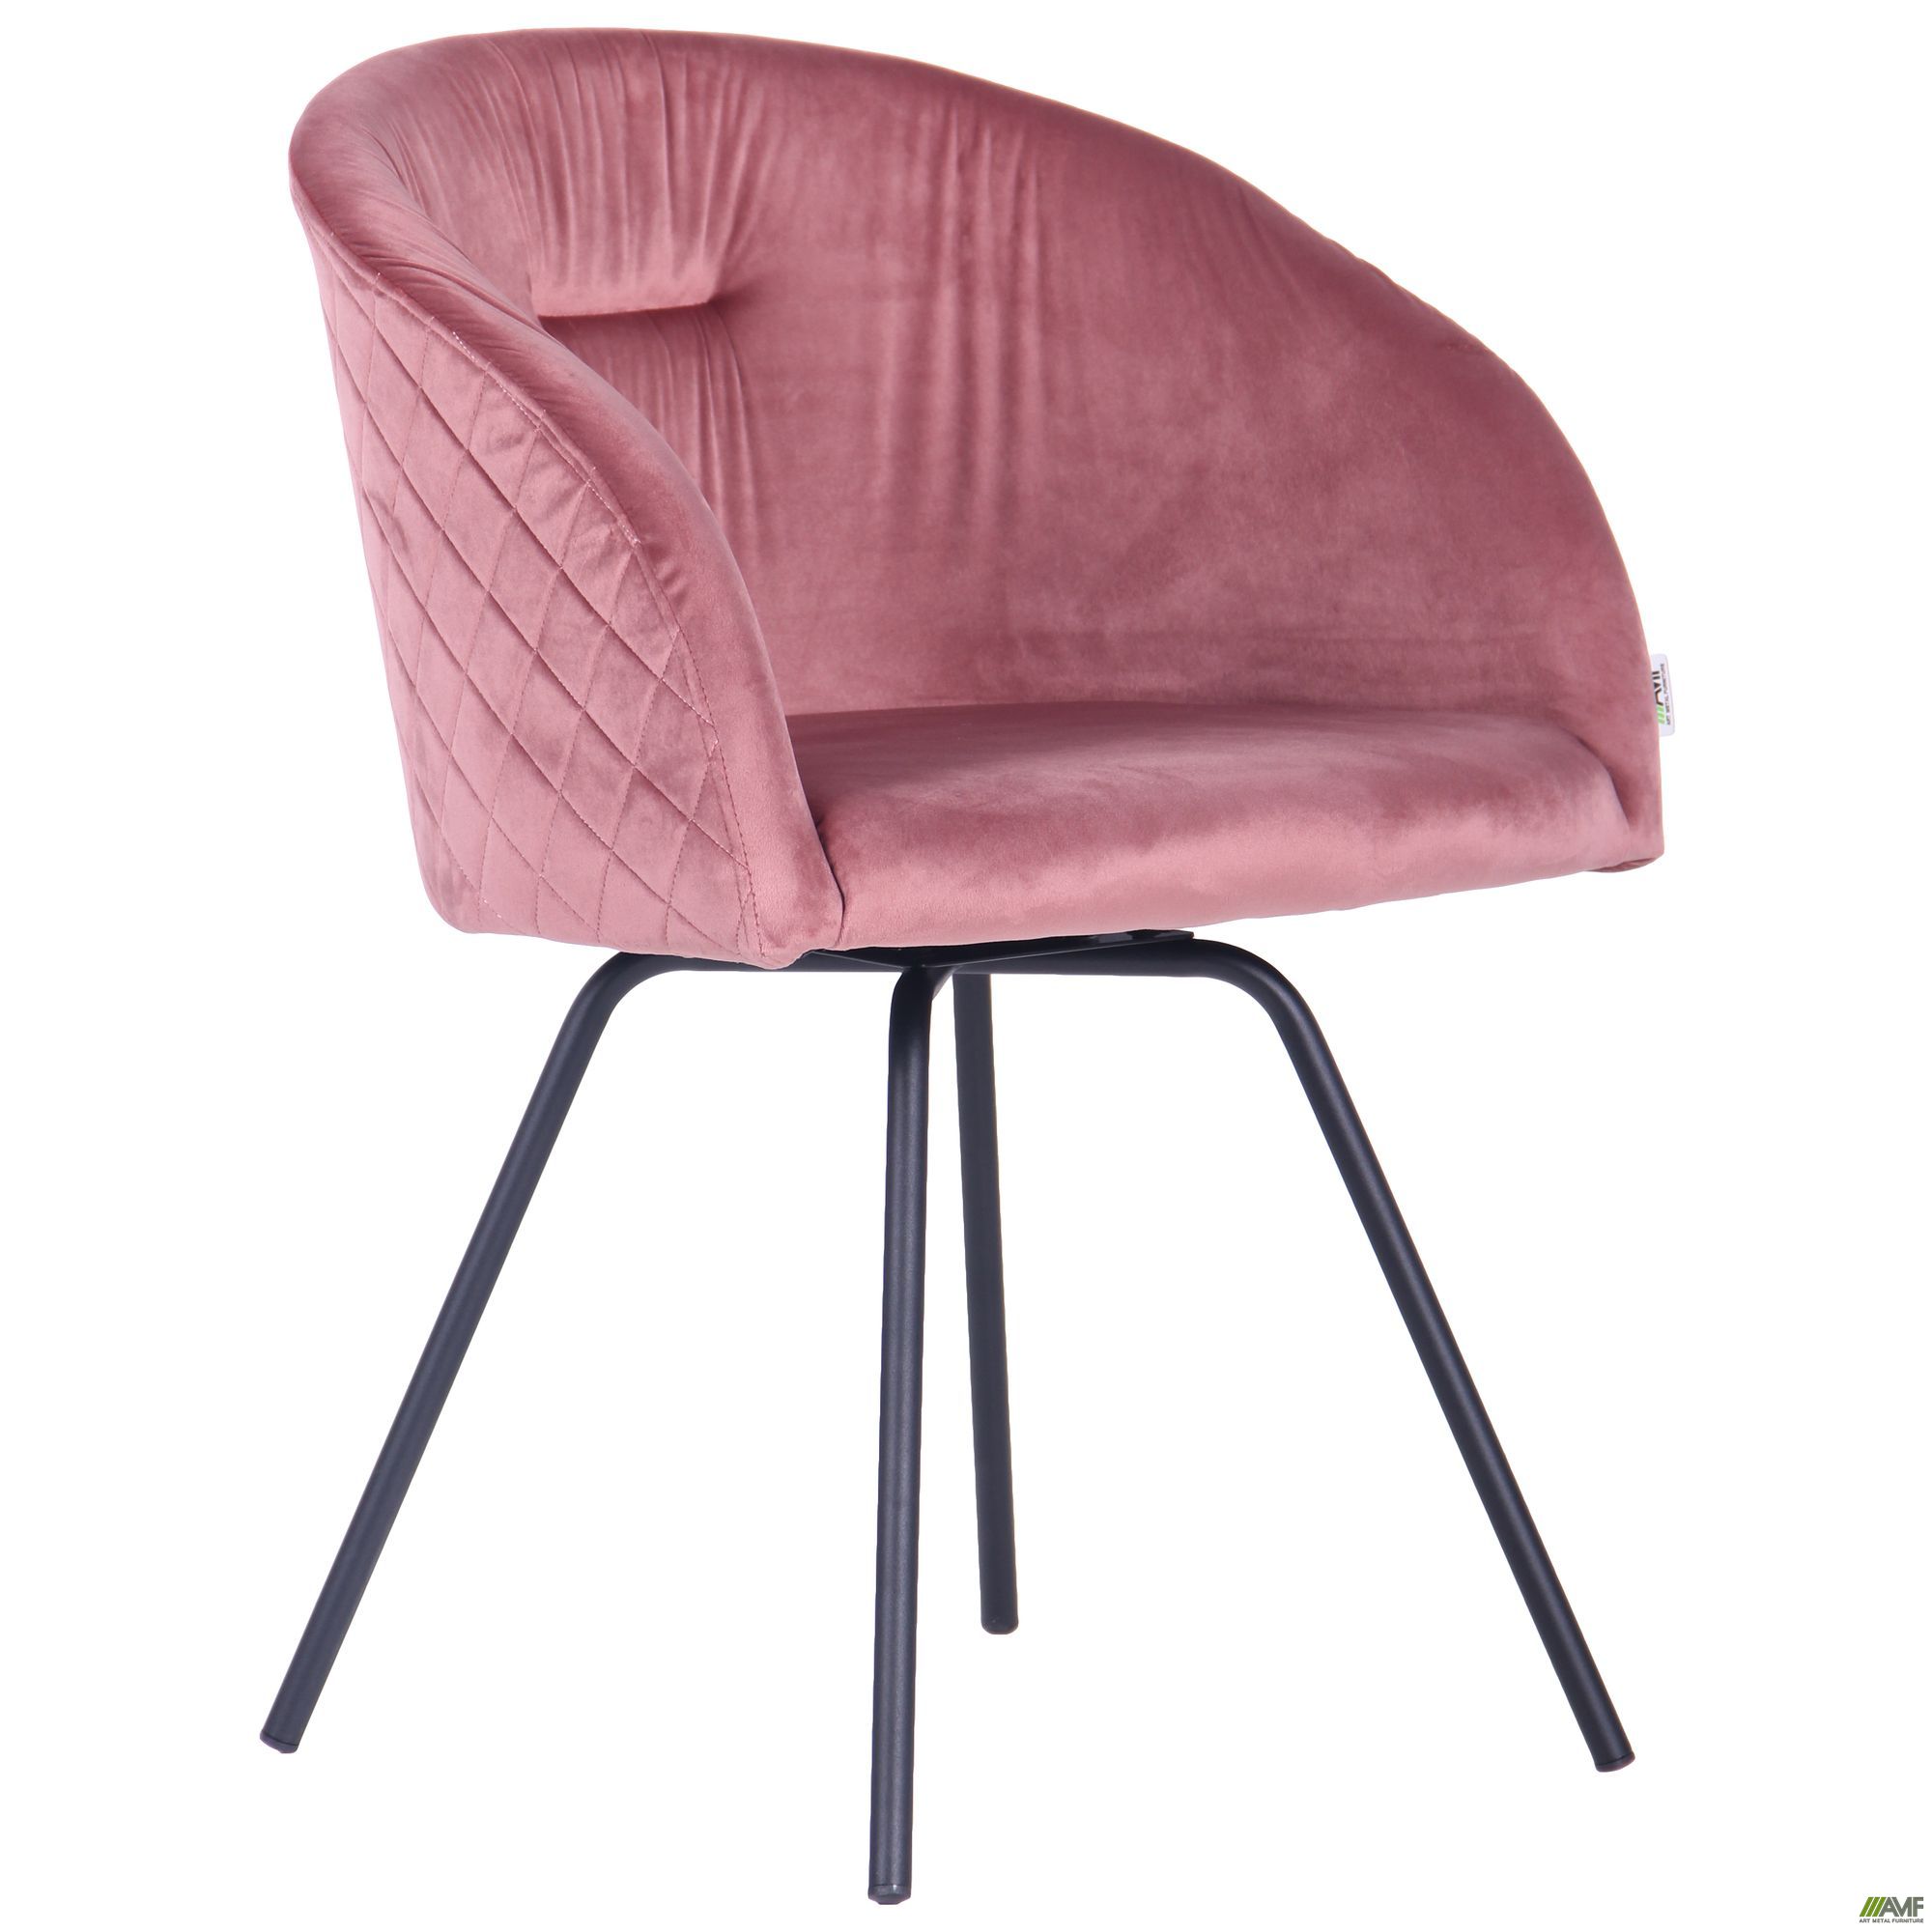 Фото 2 - Кресло поворотное Sacramento черный/велюр розовый антик 